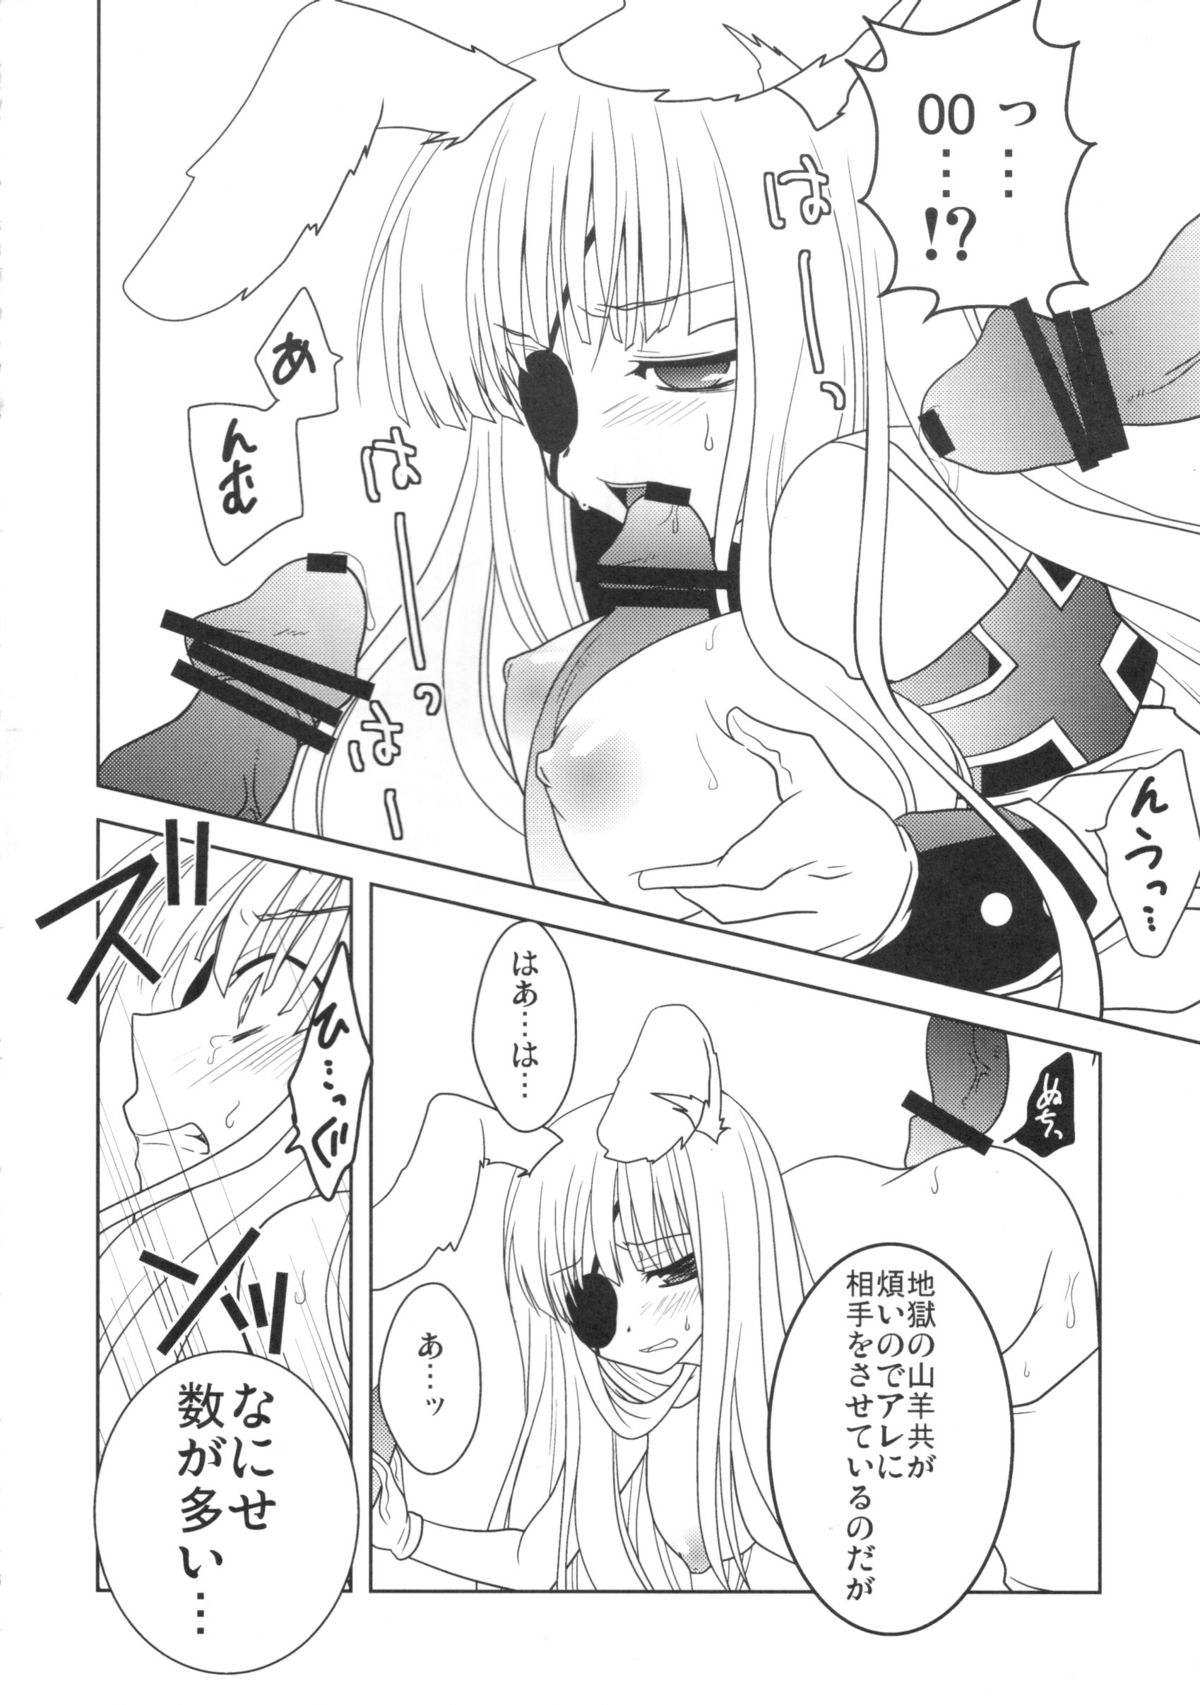 [10/der (Comoda)] Hatsujou Endless Nine (Umineko no Naku Koro ni) page 5 full